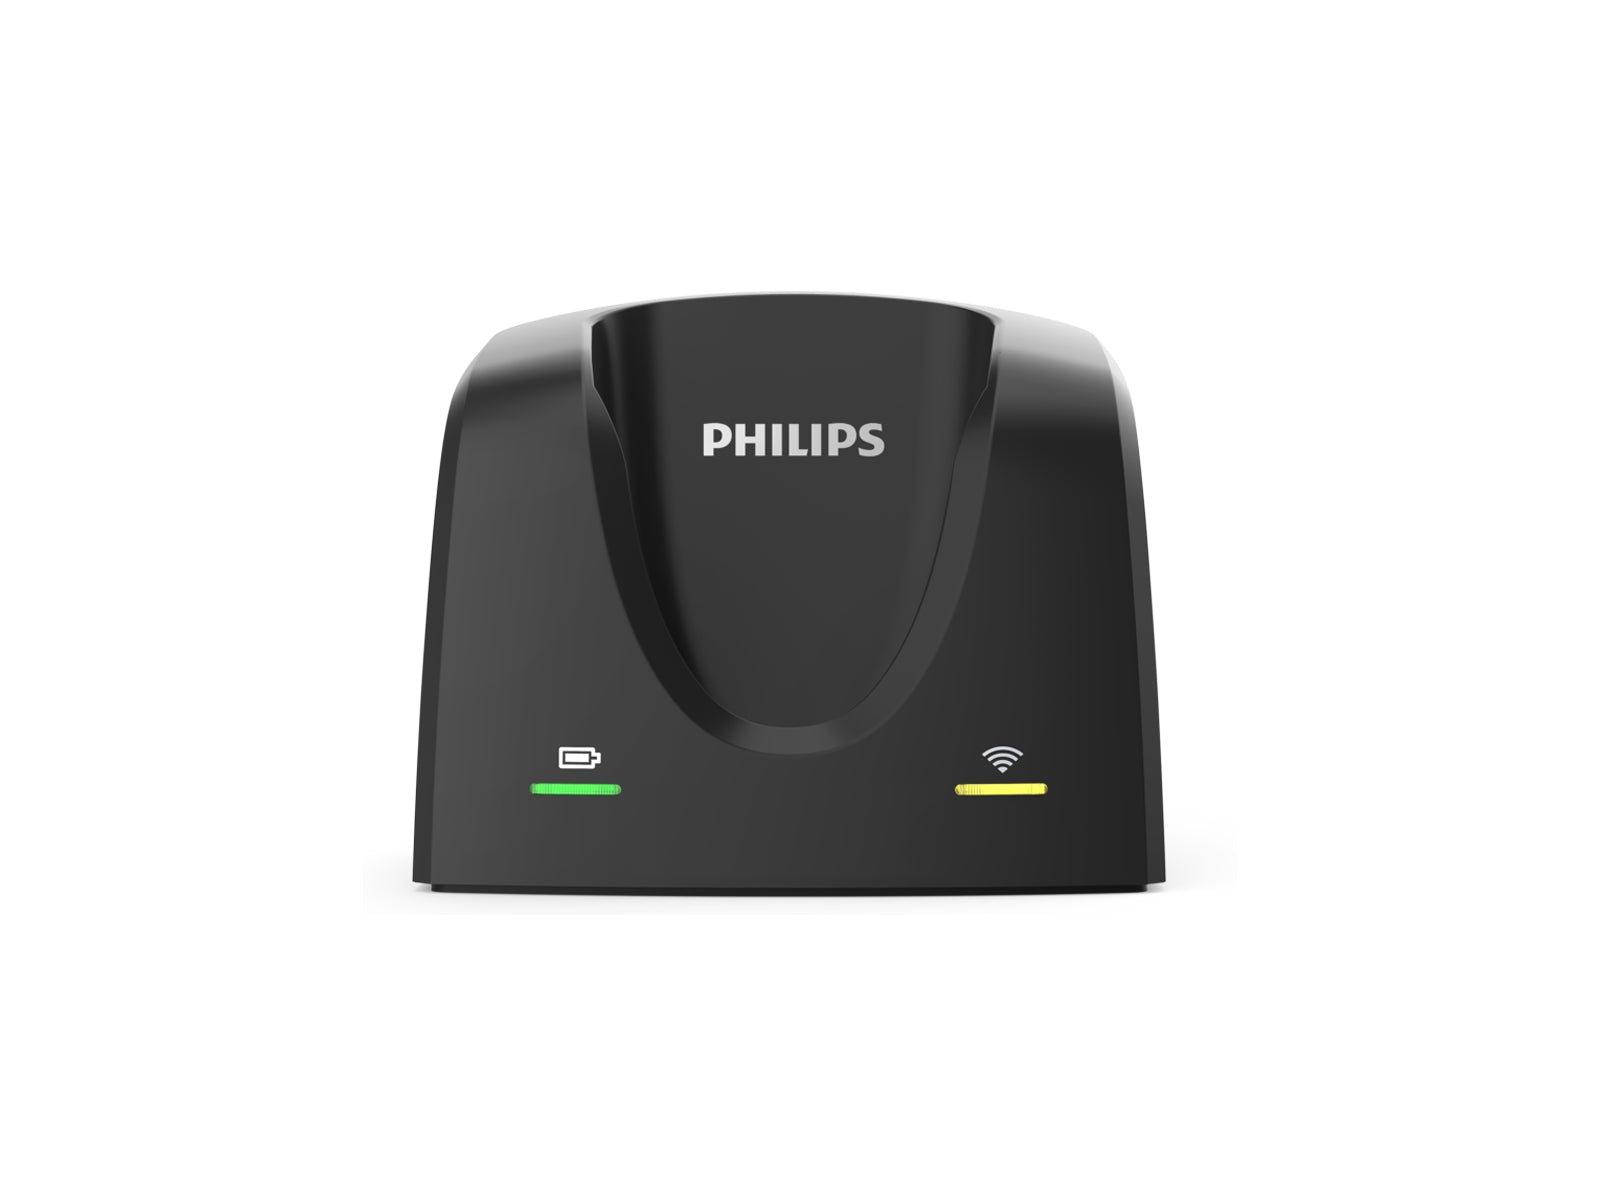 Estación de acoplamiento Philips para SpeechMike Premium Air (ACC4000) Monitors.com